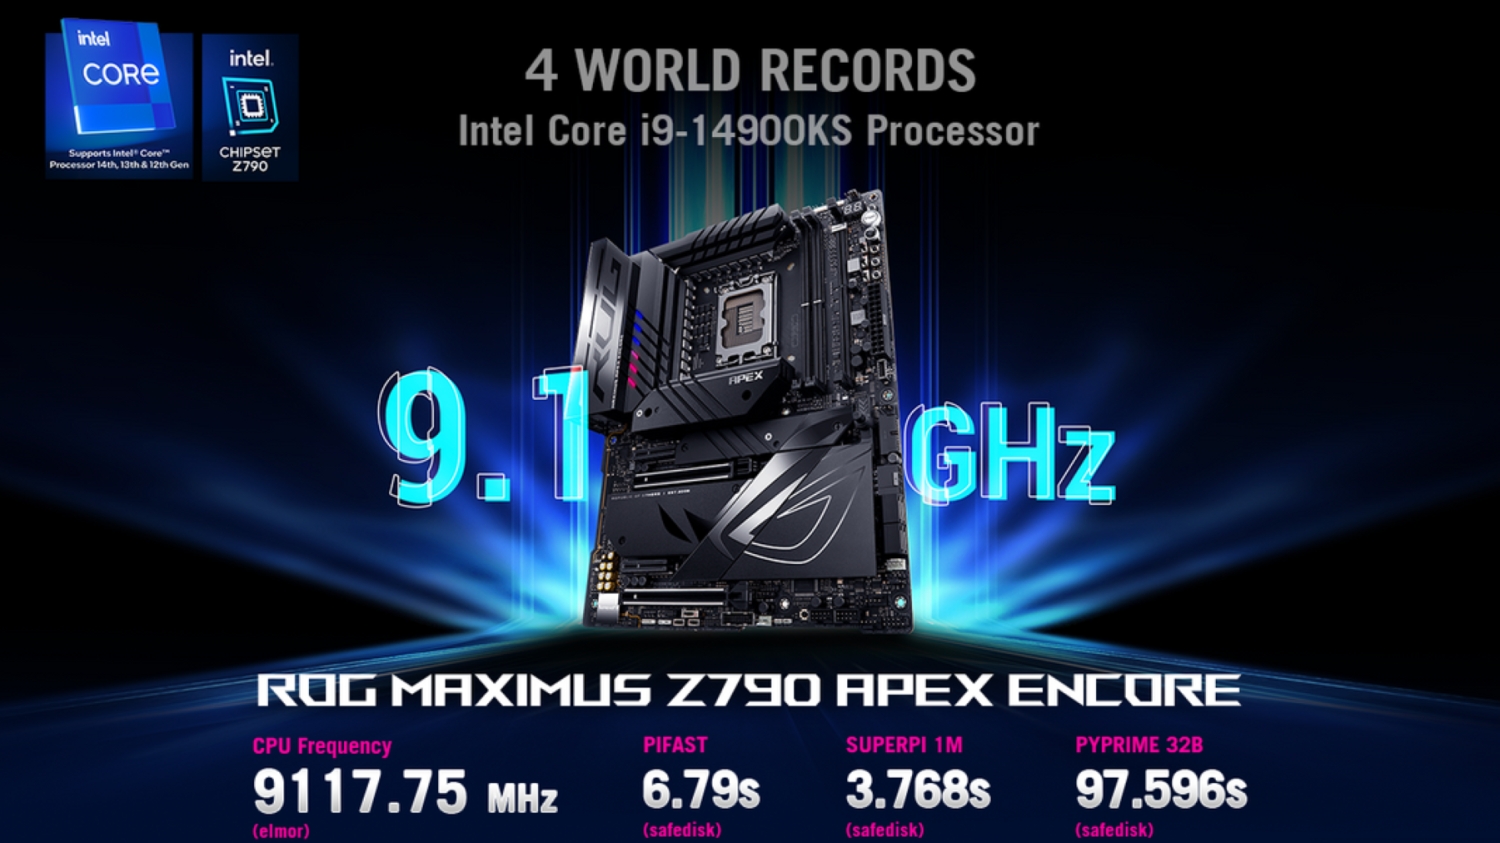 Intel's new Core i9-14900KS already overclocked to record-breaking 